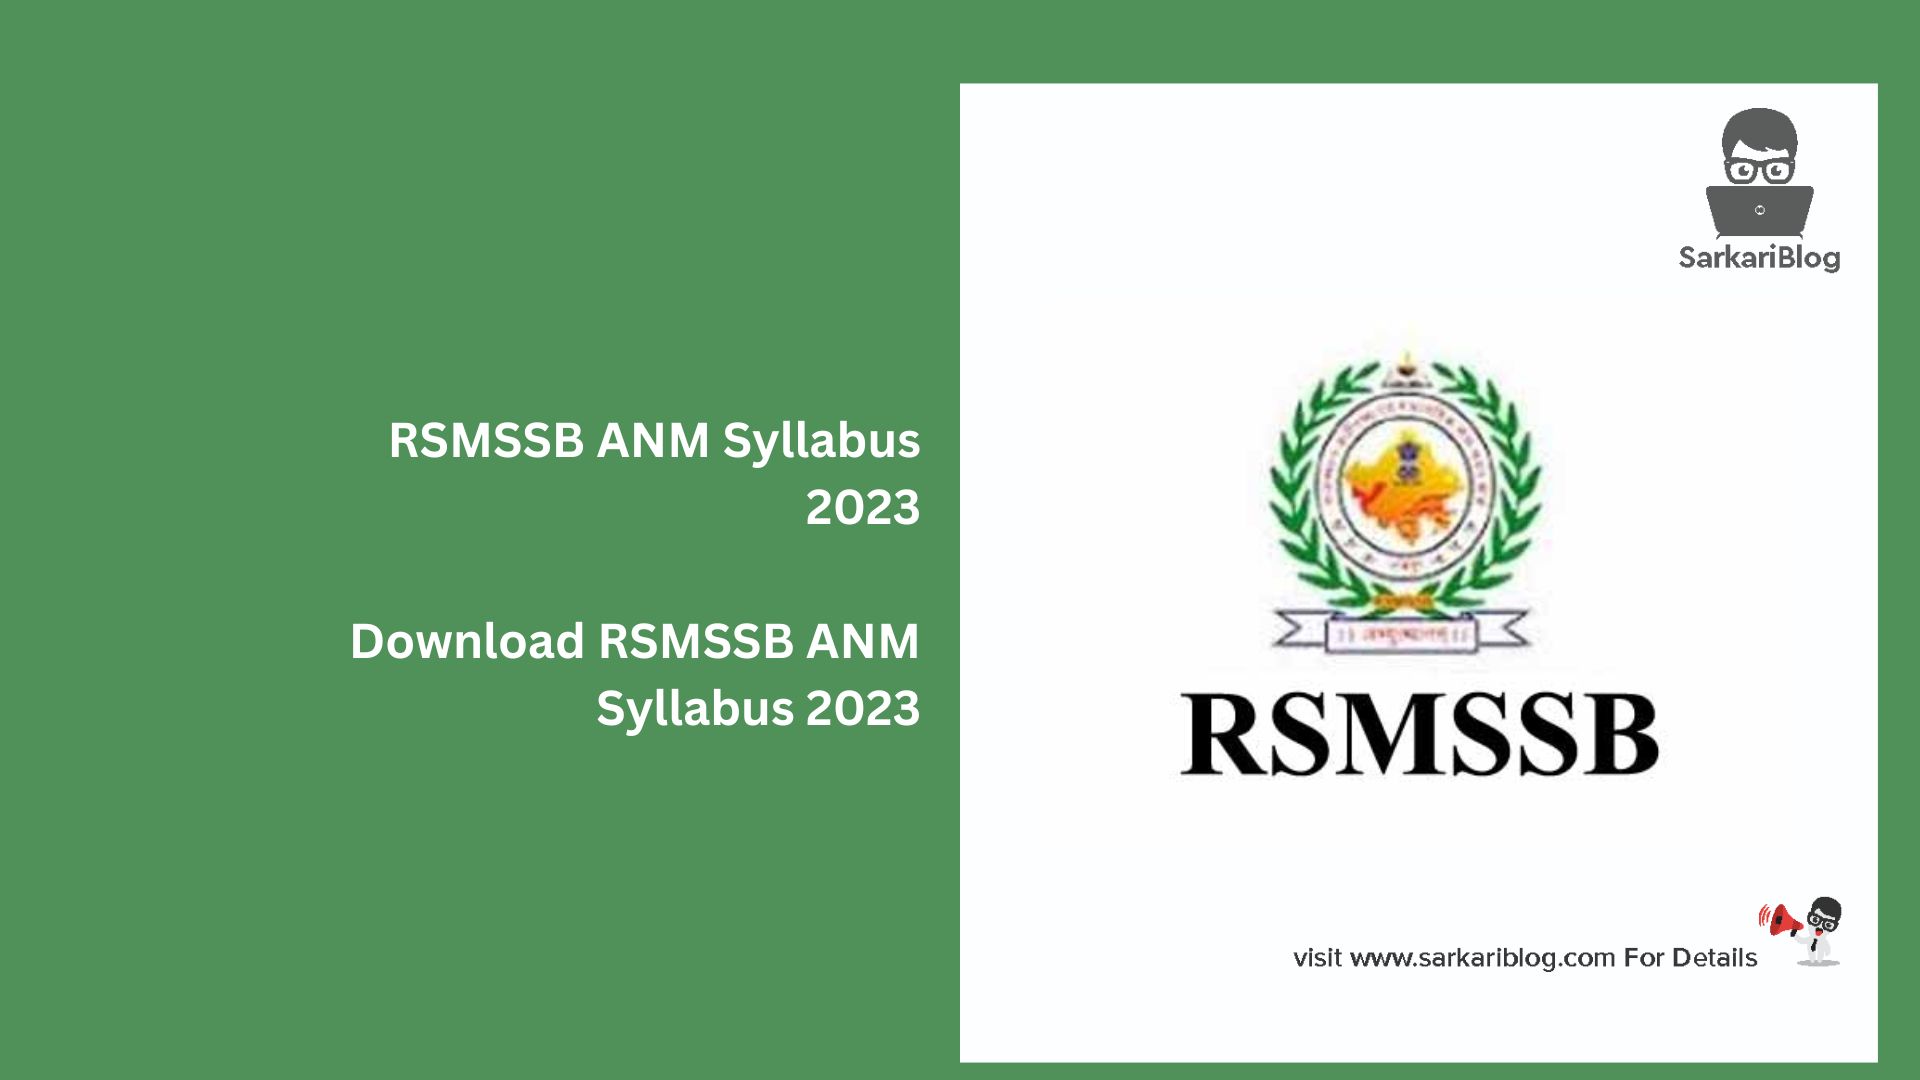 Download RSMSSB ANM Syllabus 2023